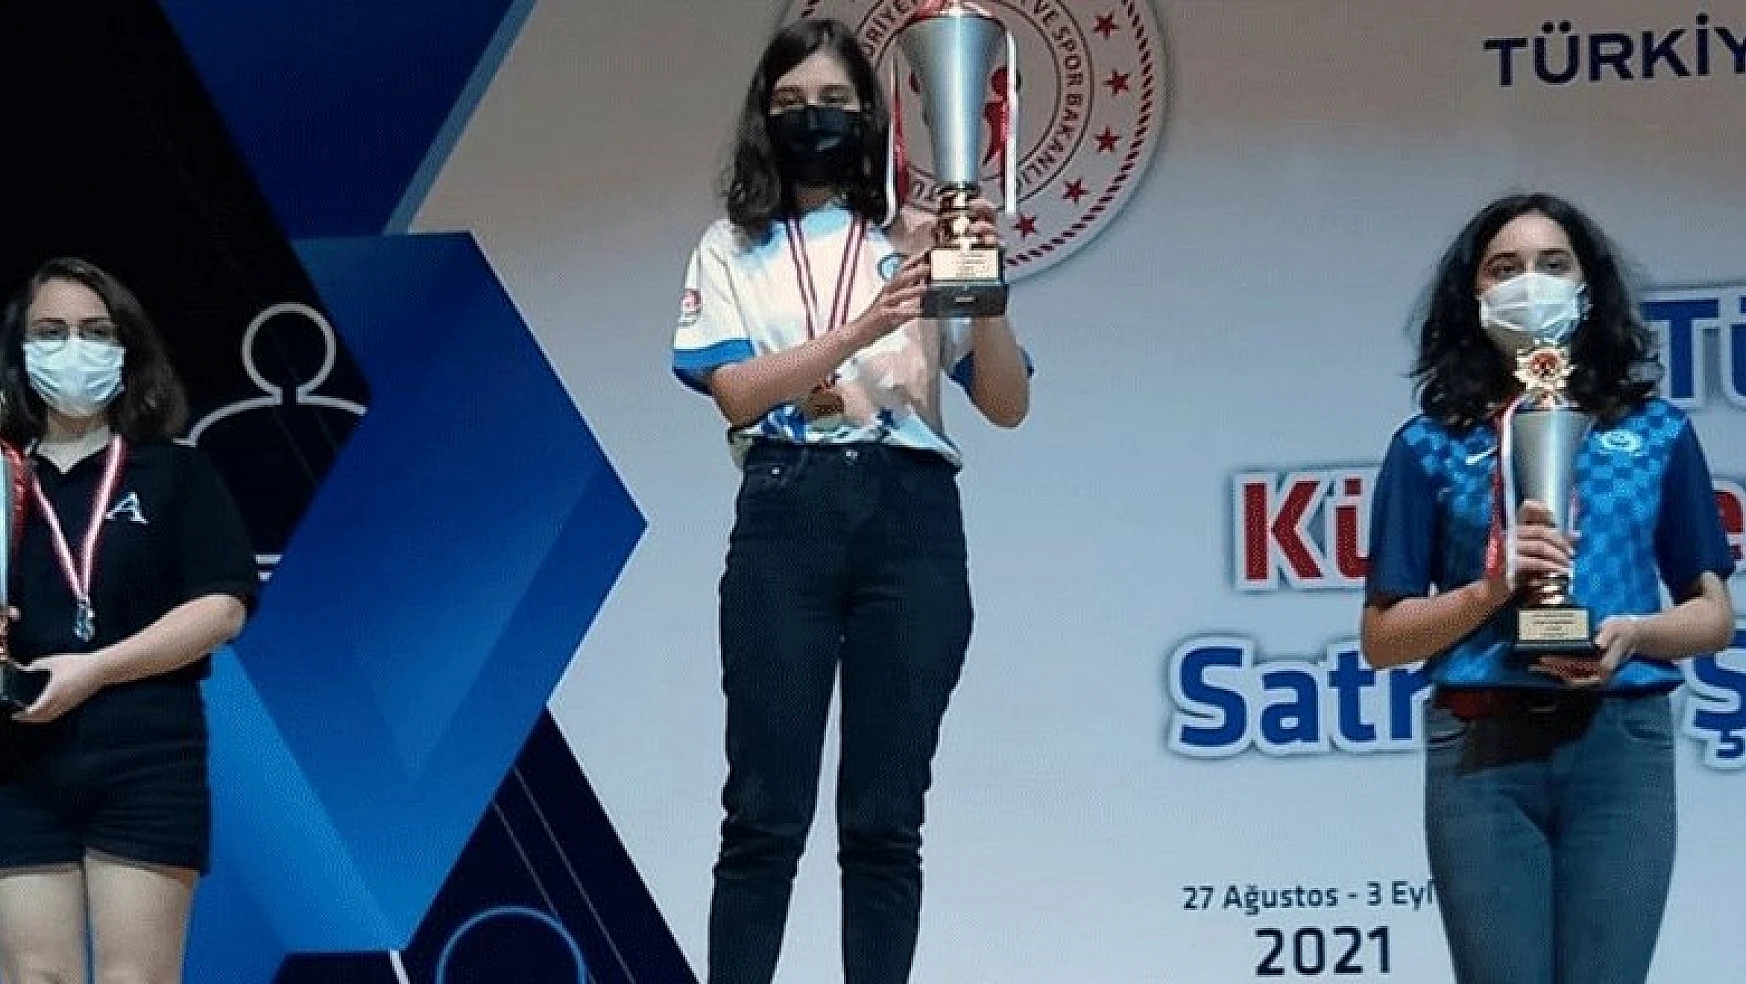 Büyükşehir satranççısı dünya şampiyonasında Türkiye'yi temsil edecek